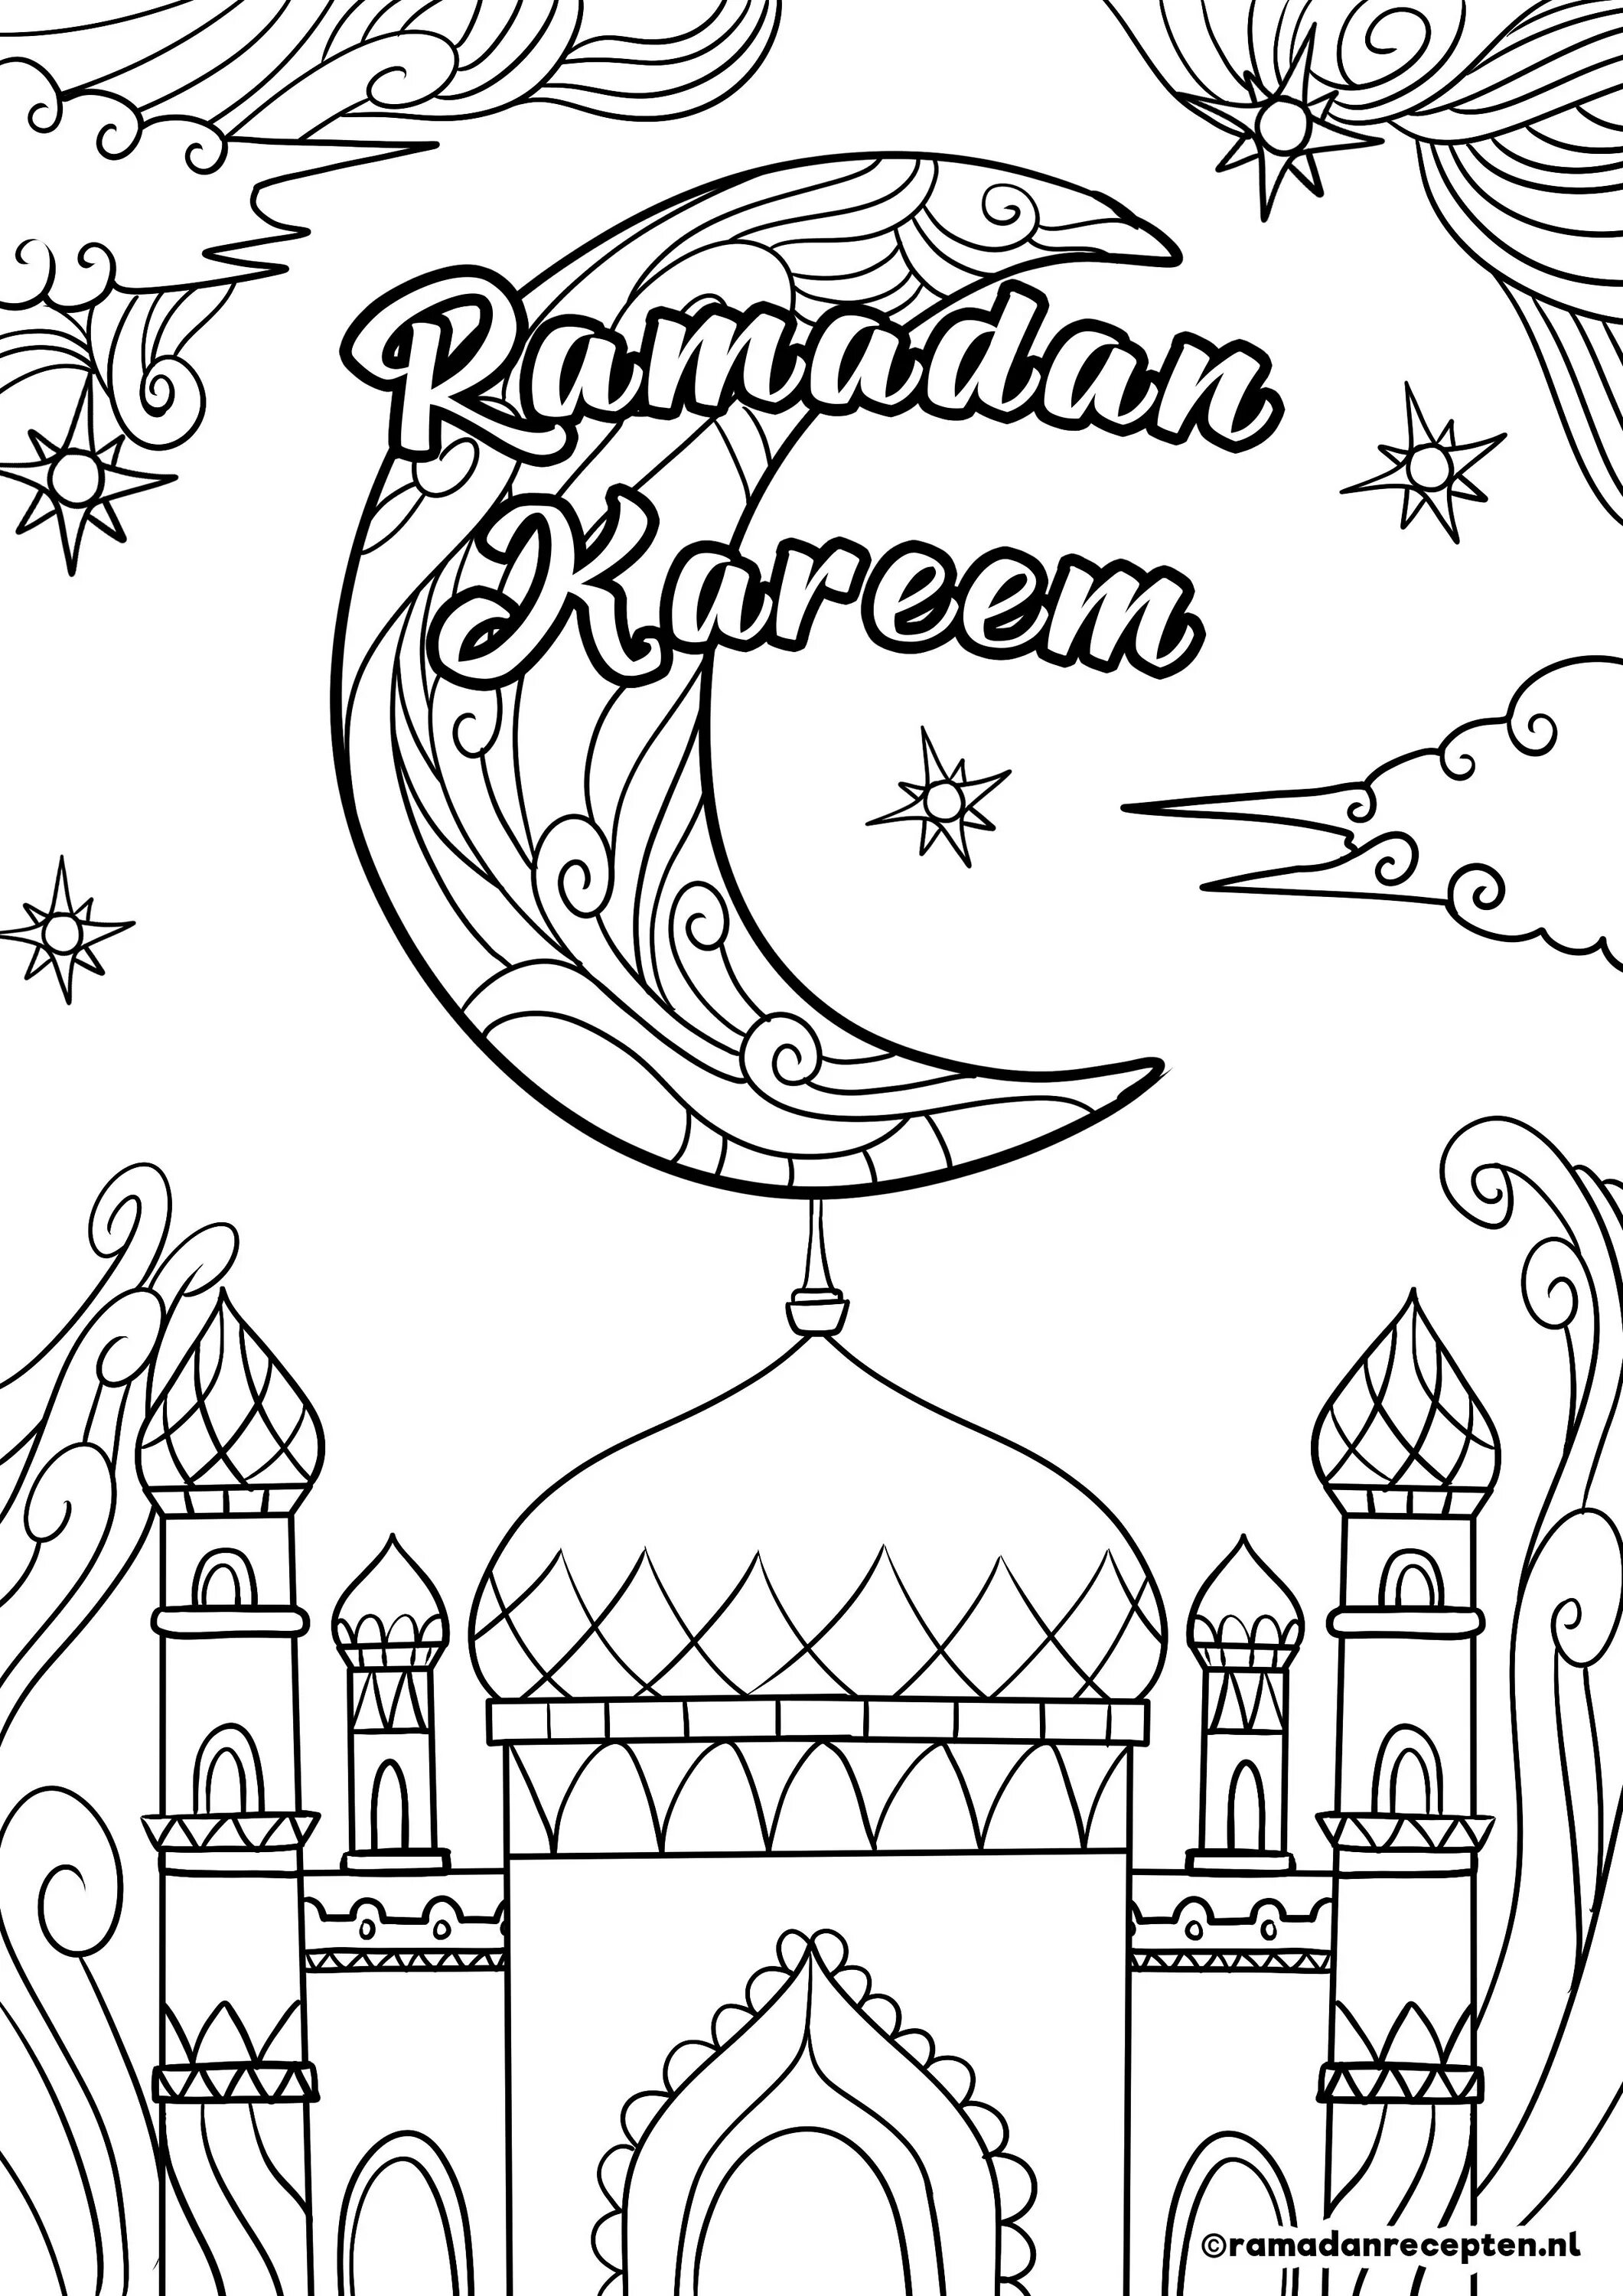 Рисунок на уразу. Рамадан мубарак раскраска. Раскраска Рамадан. Раскраска Рамадан для детей. Раскраски мусудьманск.